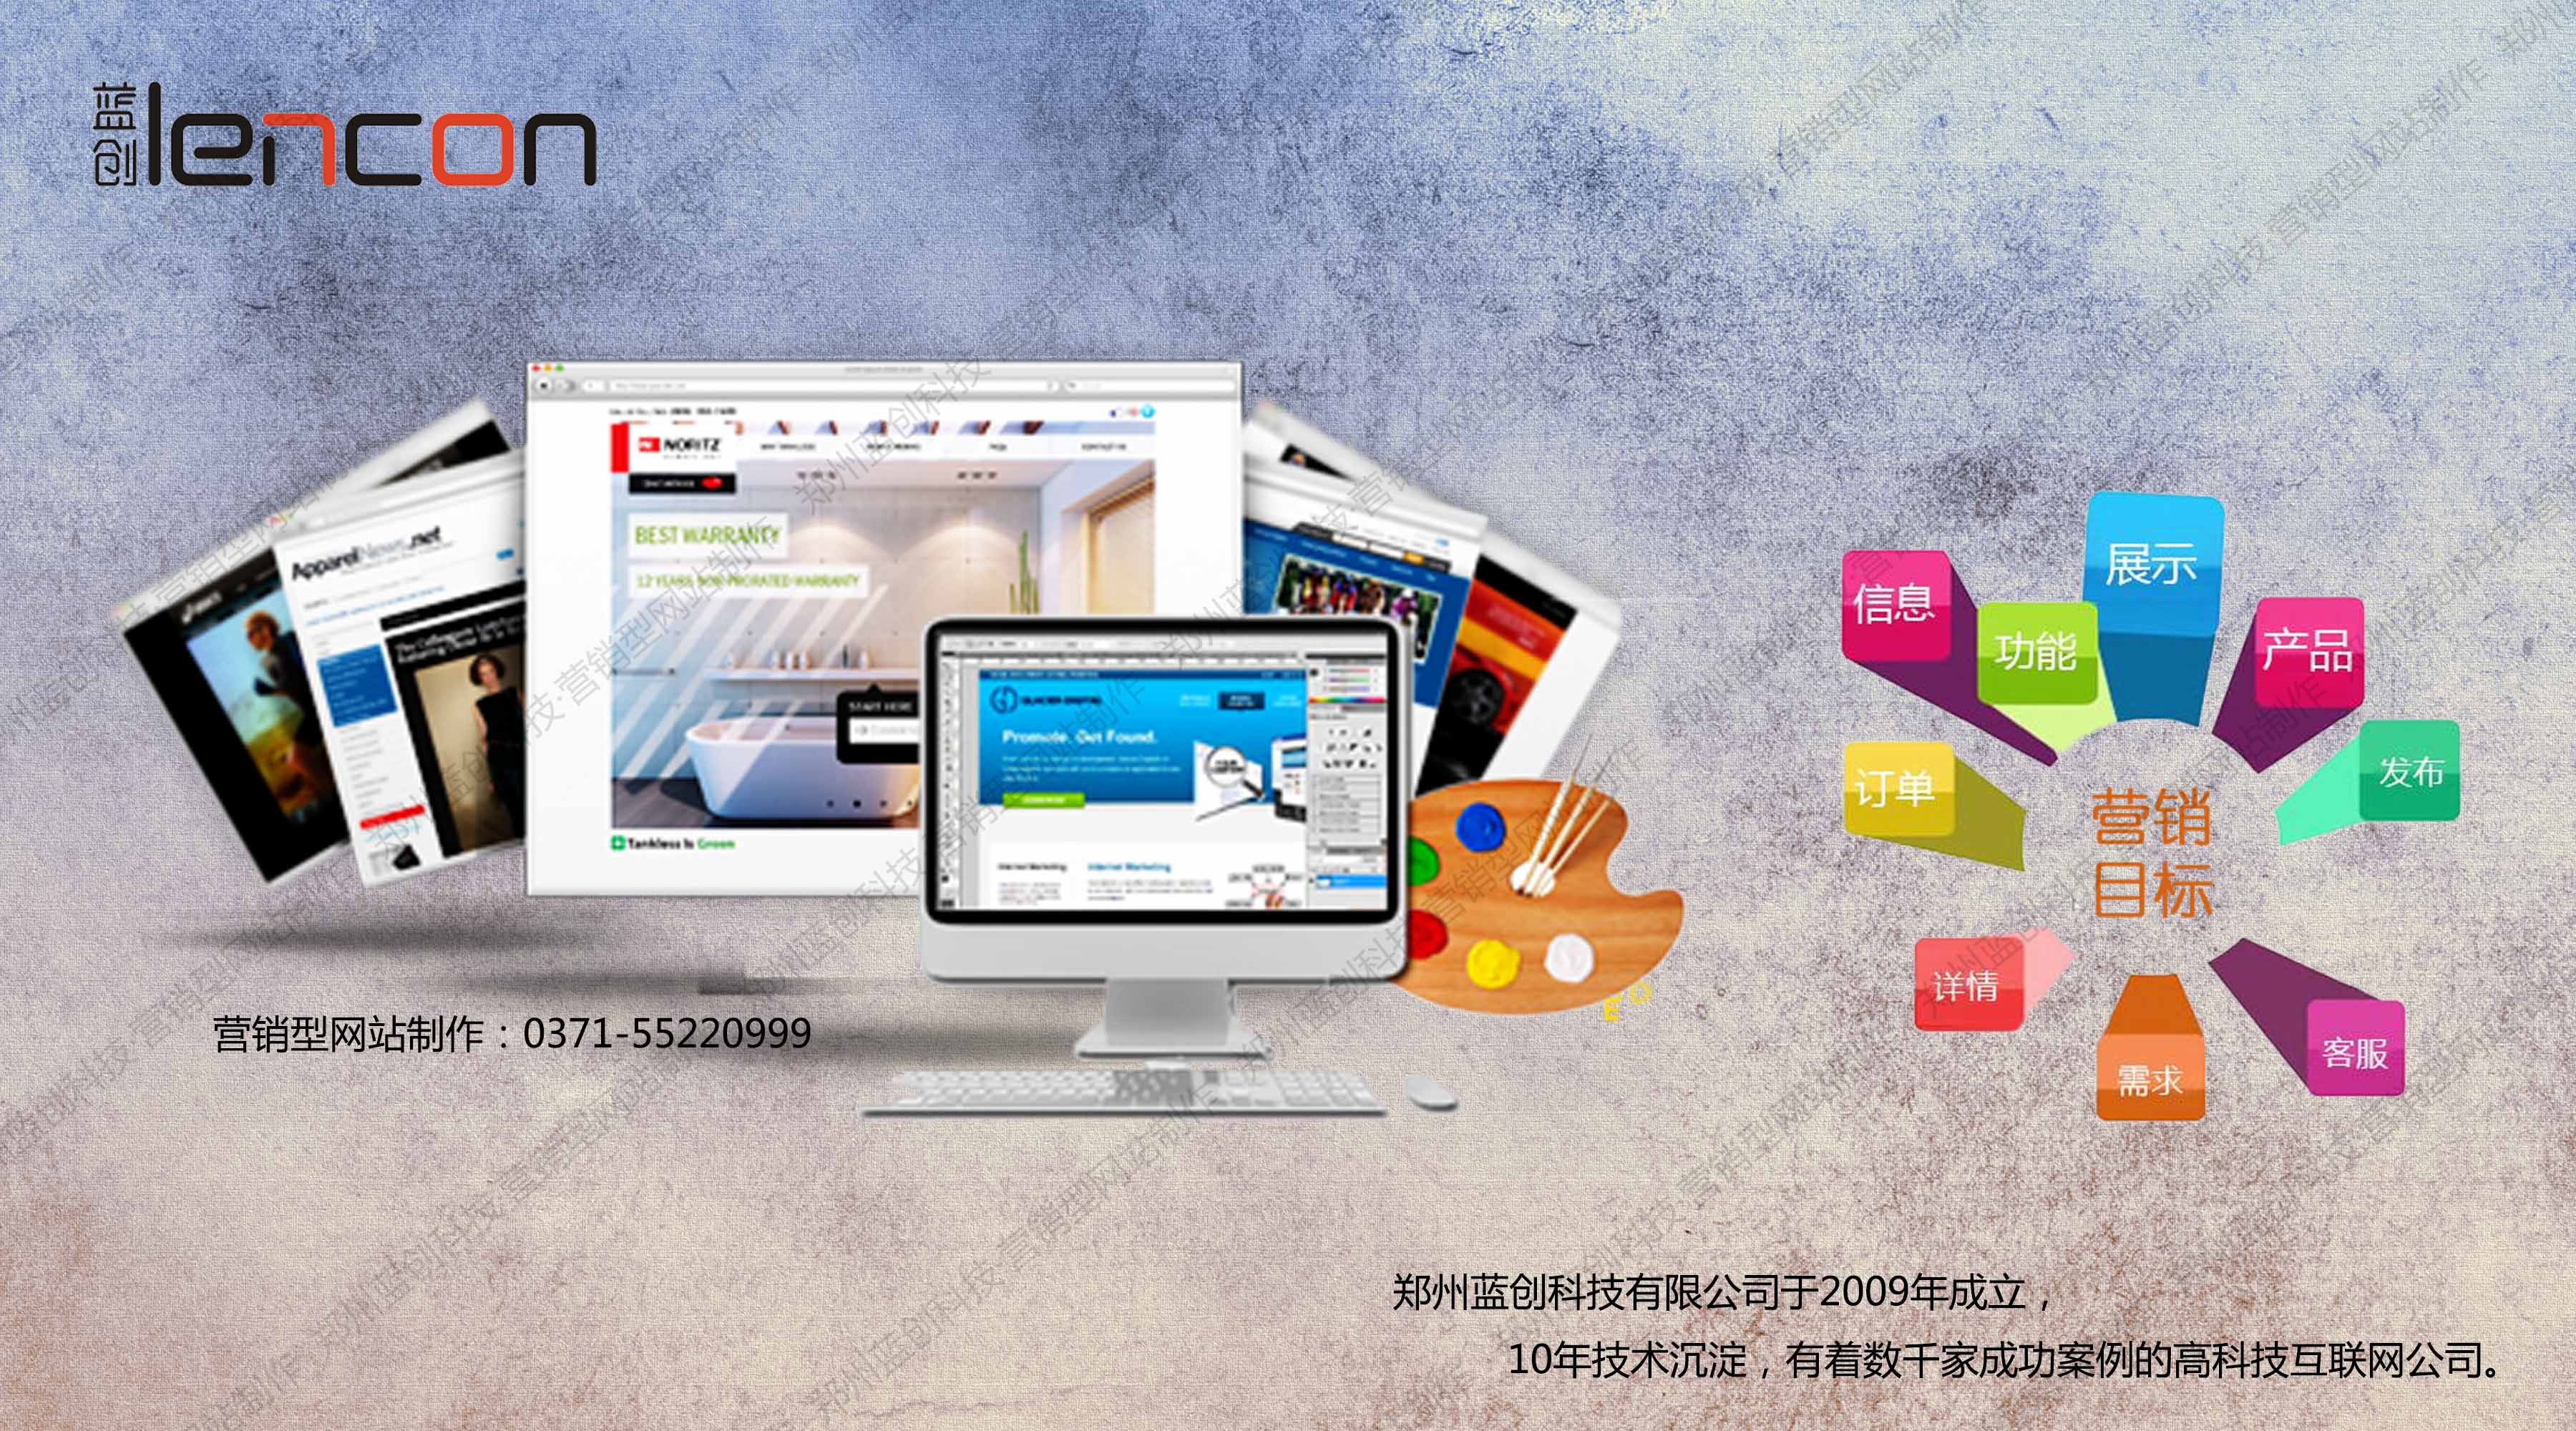 网站建设列导航和页面组织架构腾云网络郑州建一个网站制作栏目设